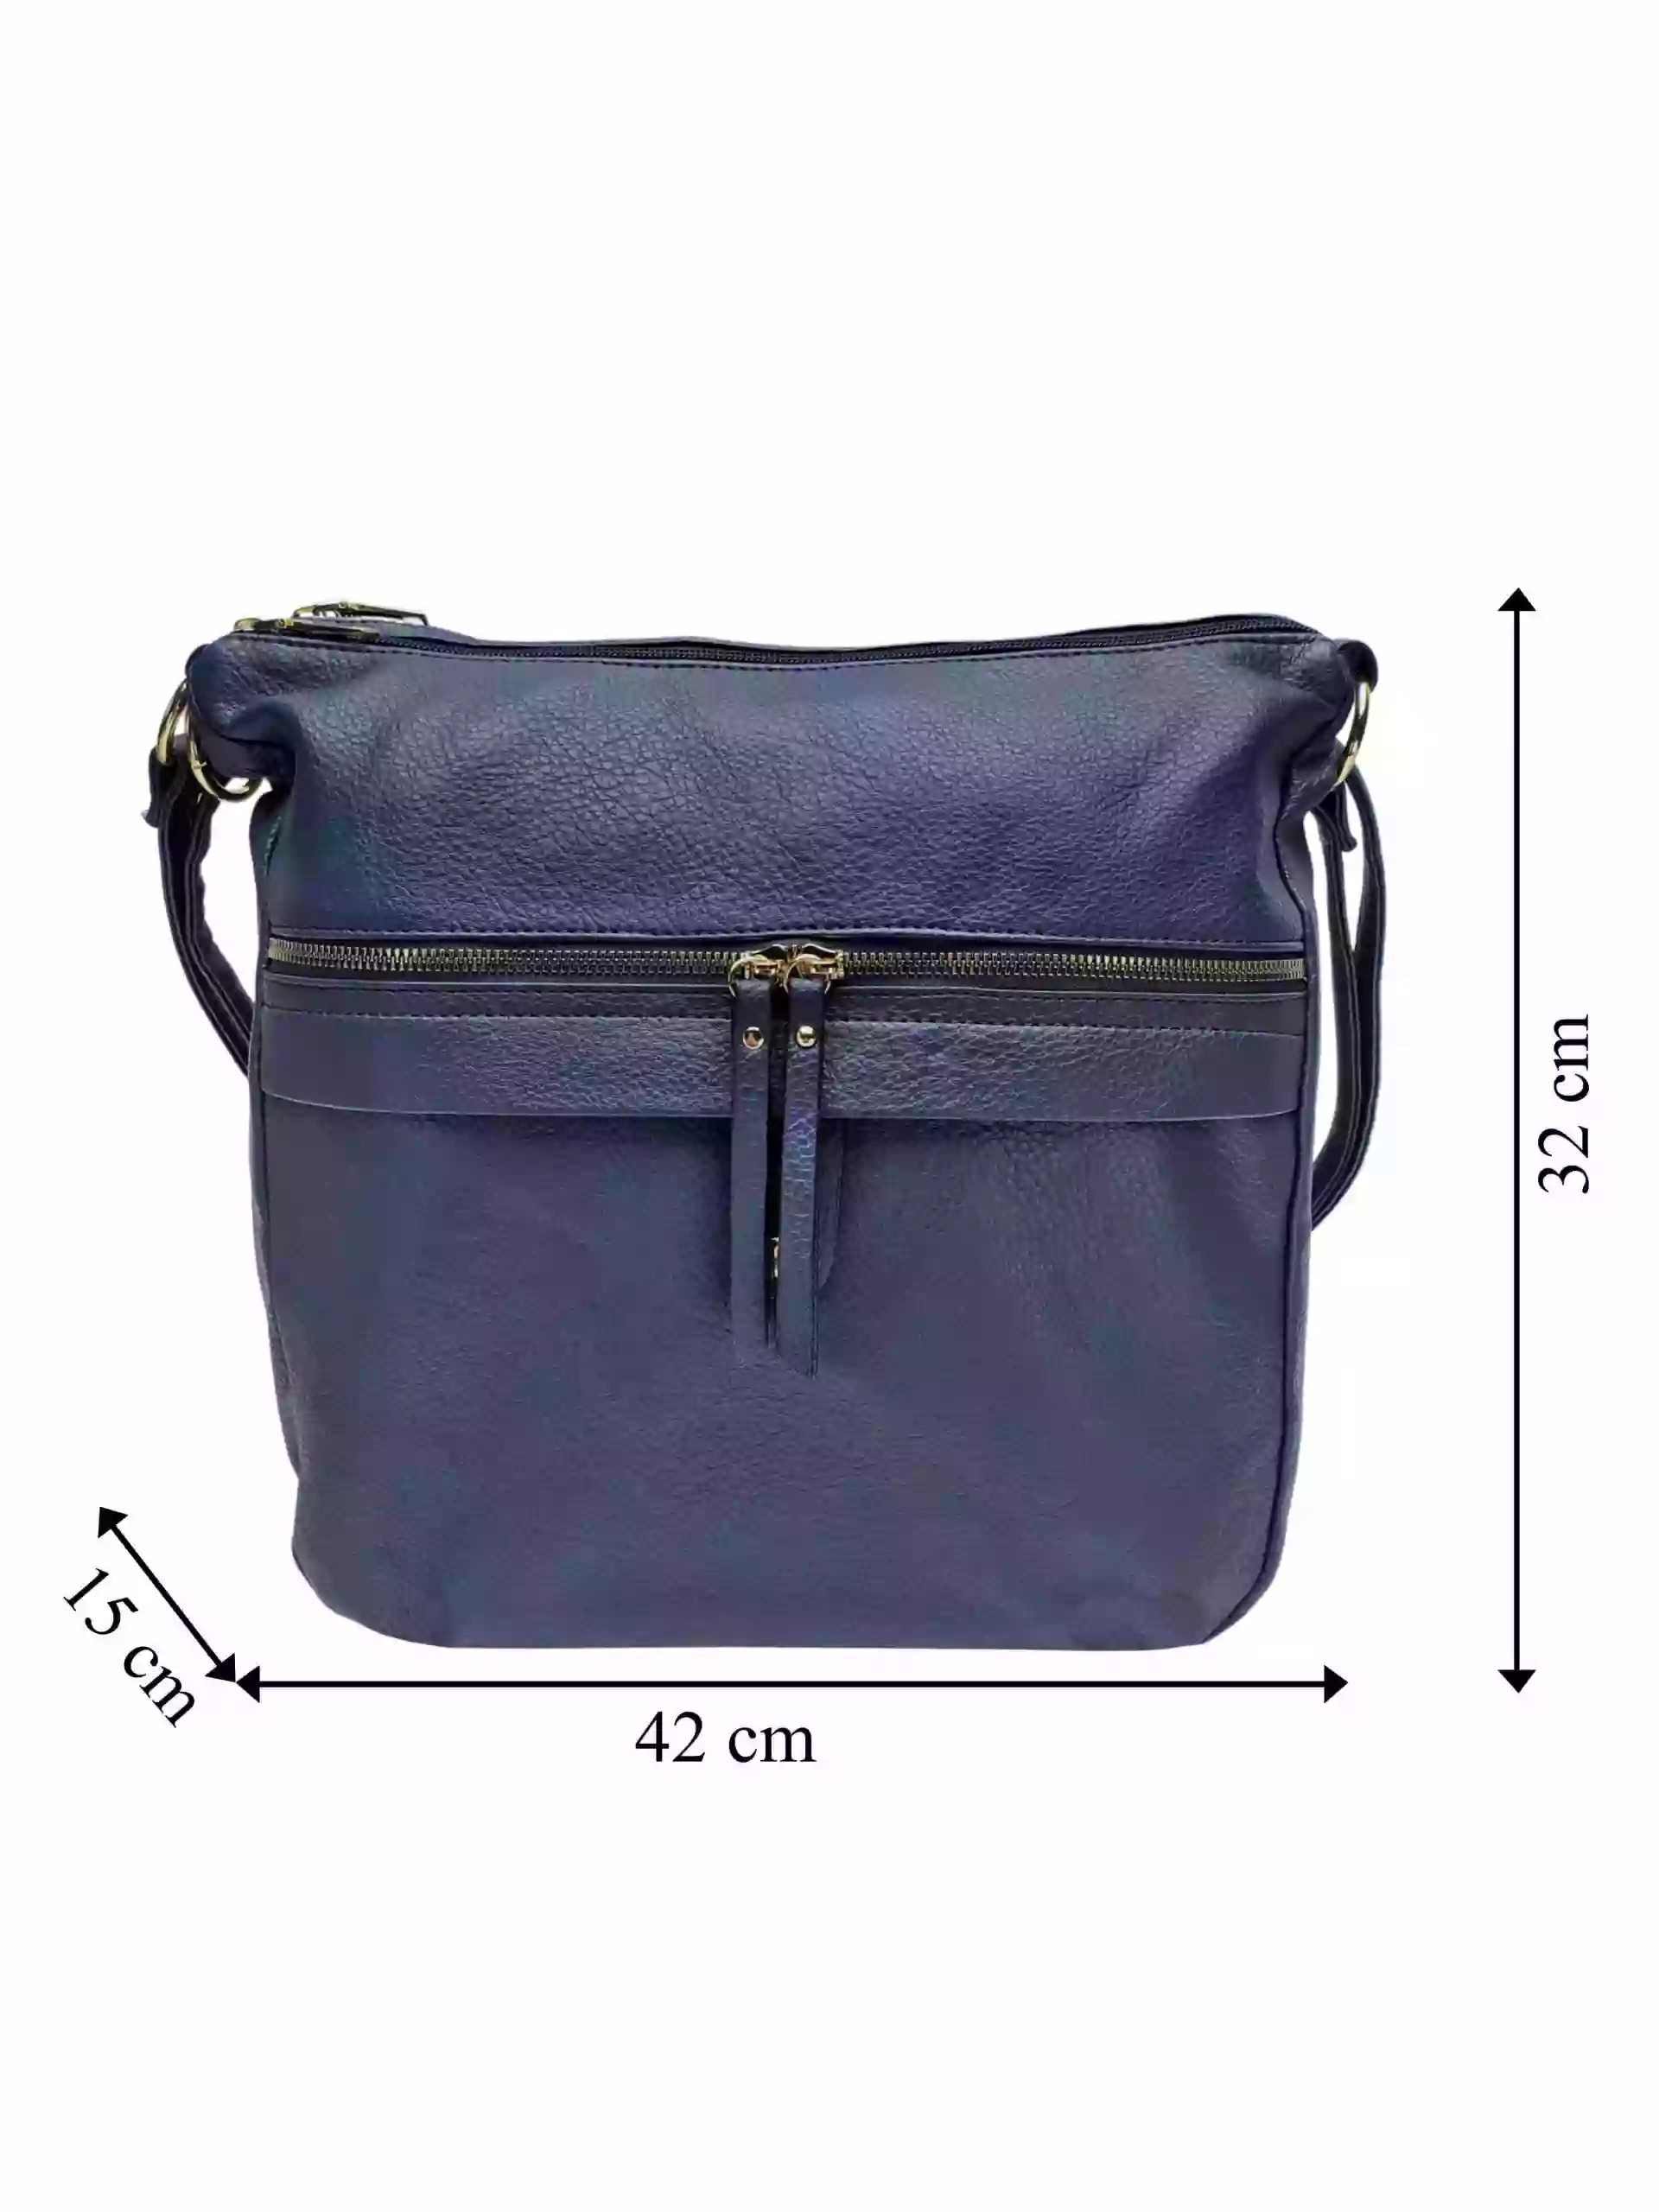 Velký tmavě modrý kabelko-batoh 2v1 s kapsou, Int. Company, H23, přední strana kabelko-batohu s rozměry